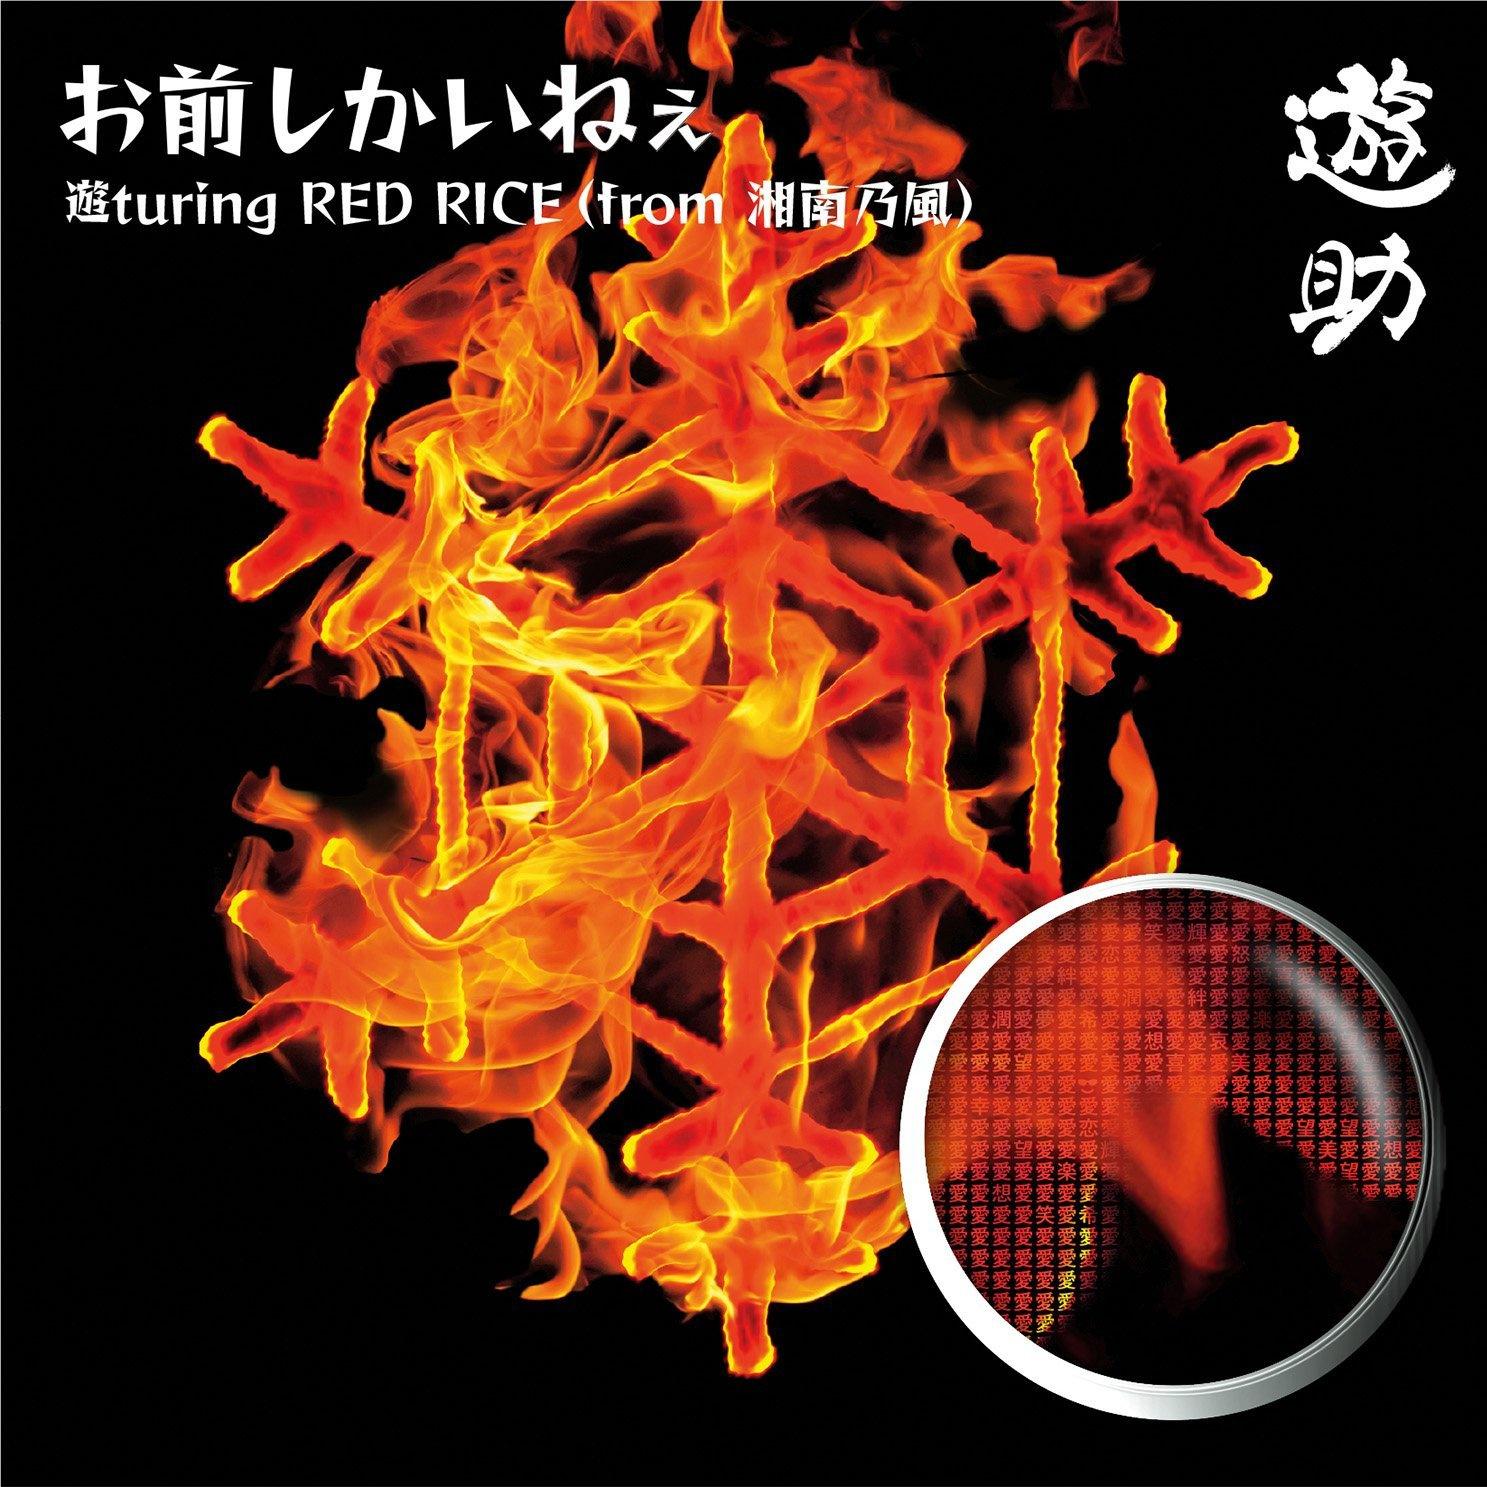 お前しかいねぇ 遊turing RED RICE(from湘南乃風)(初回生産限定盤A)专辑